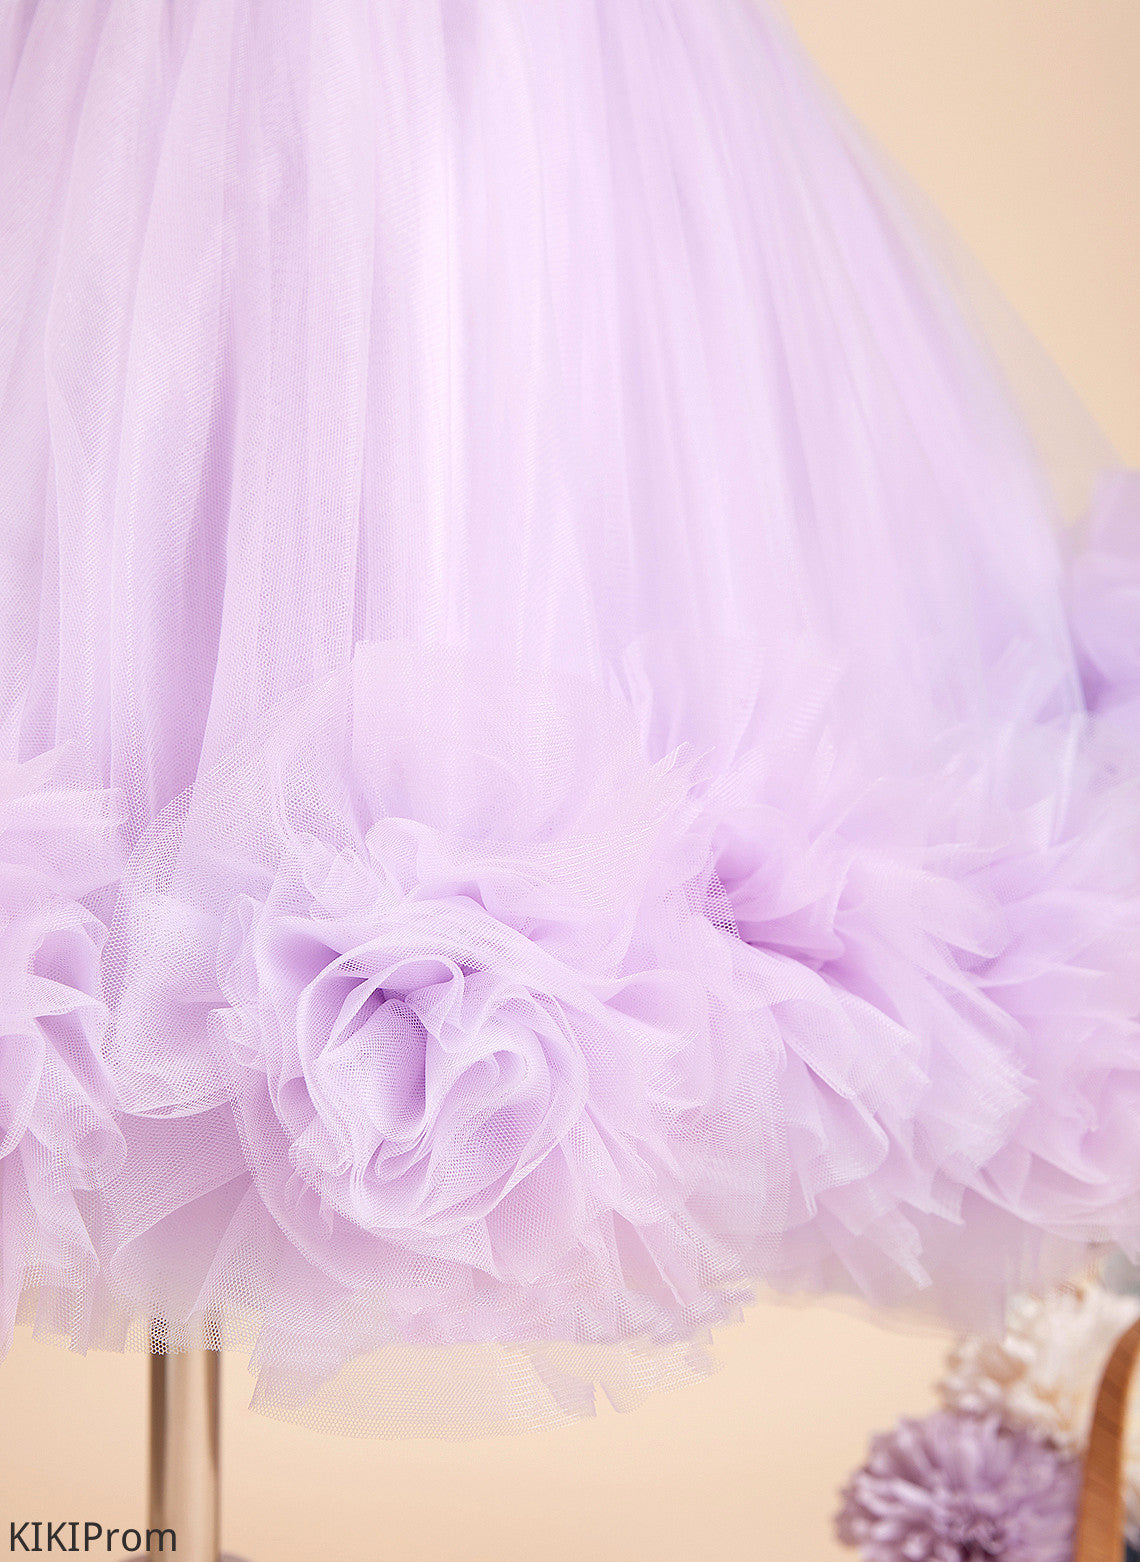 Sleeveless Scoop Knee-length Dress - Flower Girl Dresses Flower(s)/Sequins With Ball-Gown/Princess Flower Satin/Tulle Girl Neck Rayne